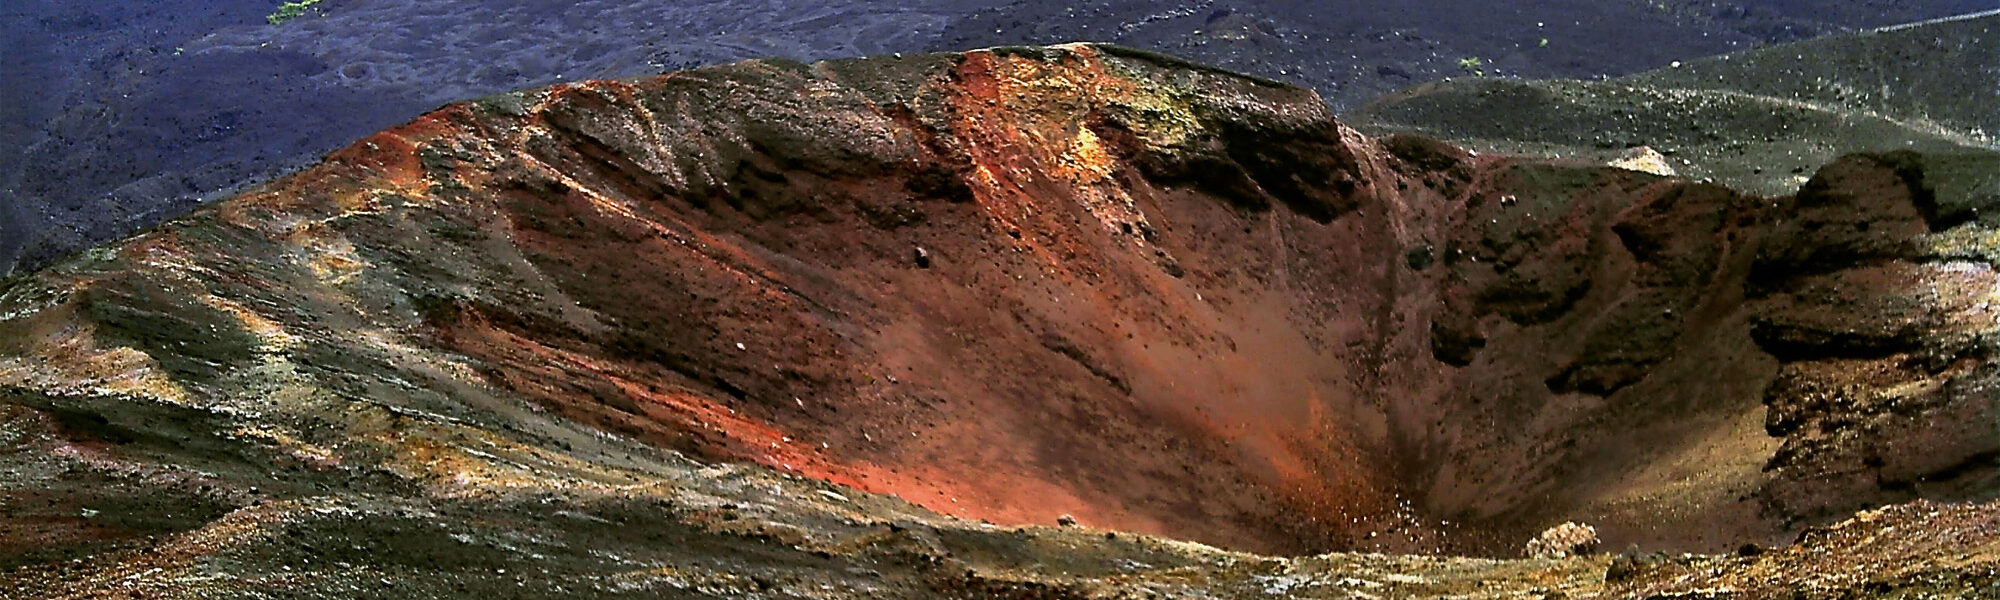 Op mijn wishlist: vulkaan surfen op de Cerro Negro